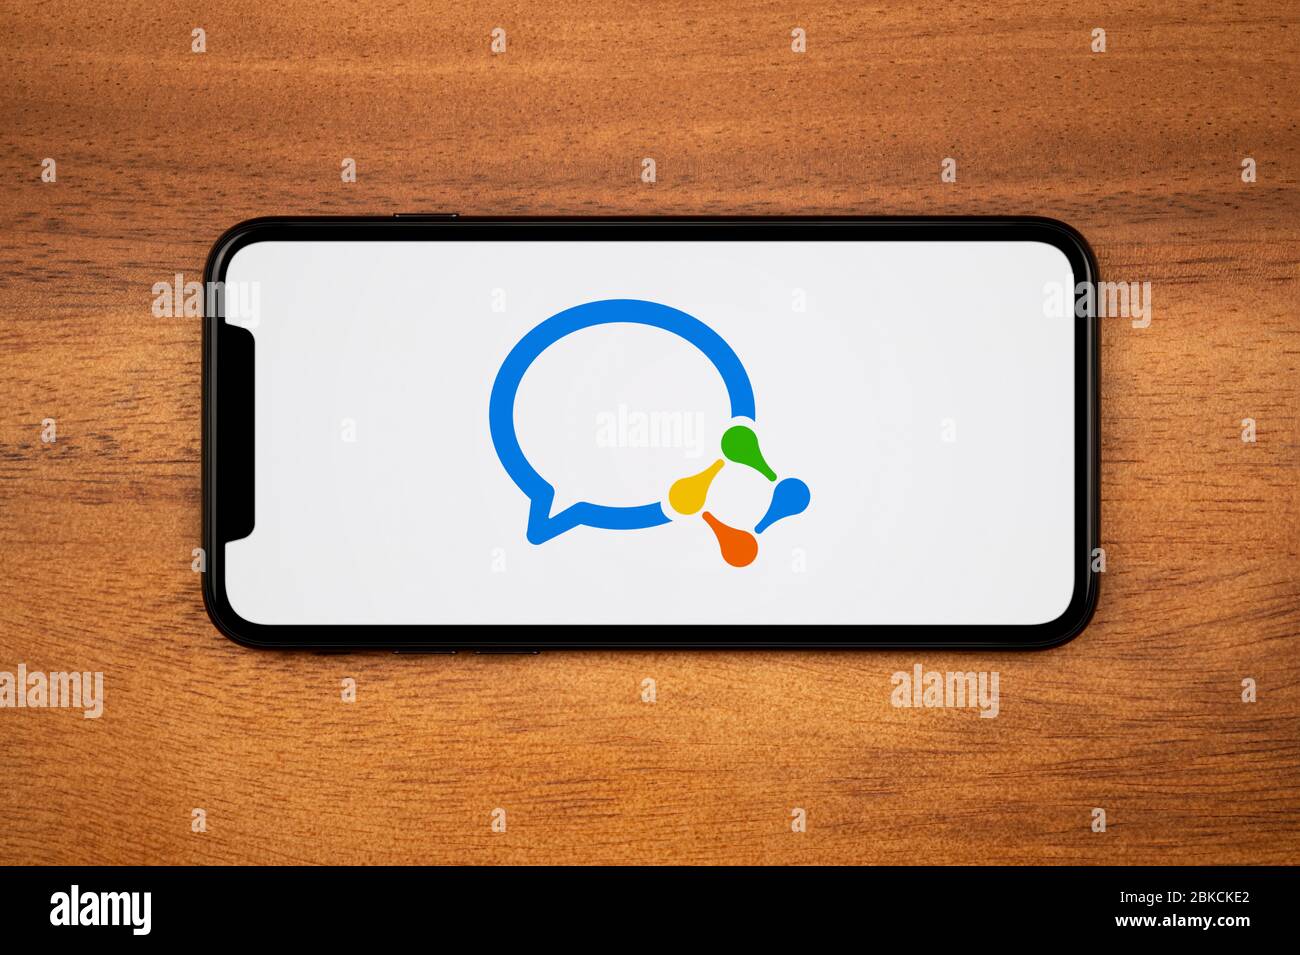 Un smartphone que muestra el logotipo de trabajo de WeChat descansa sobre una mesa de madera plana (sólo para uso editorial). Foto de stock